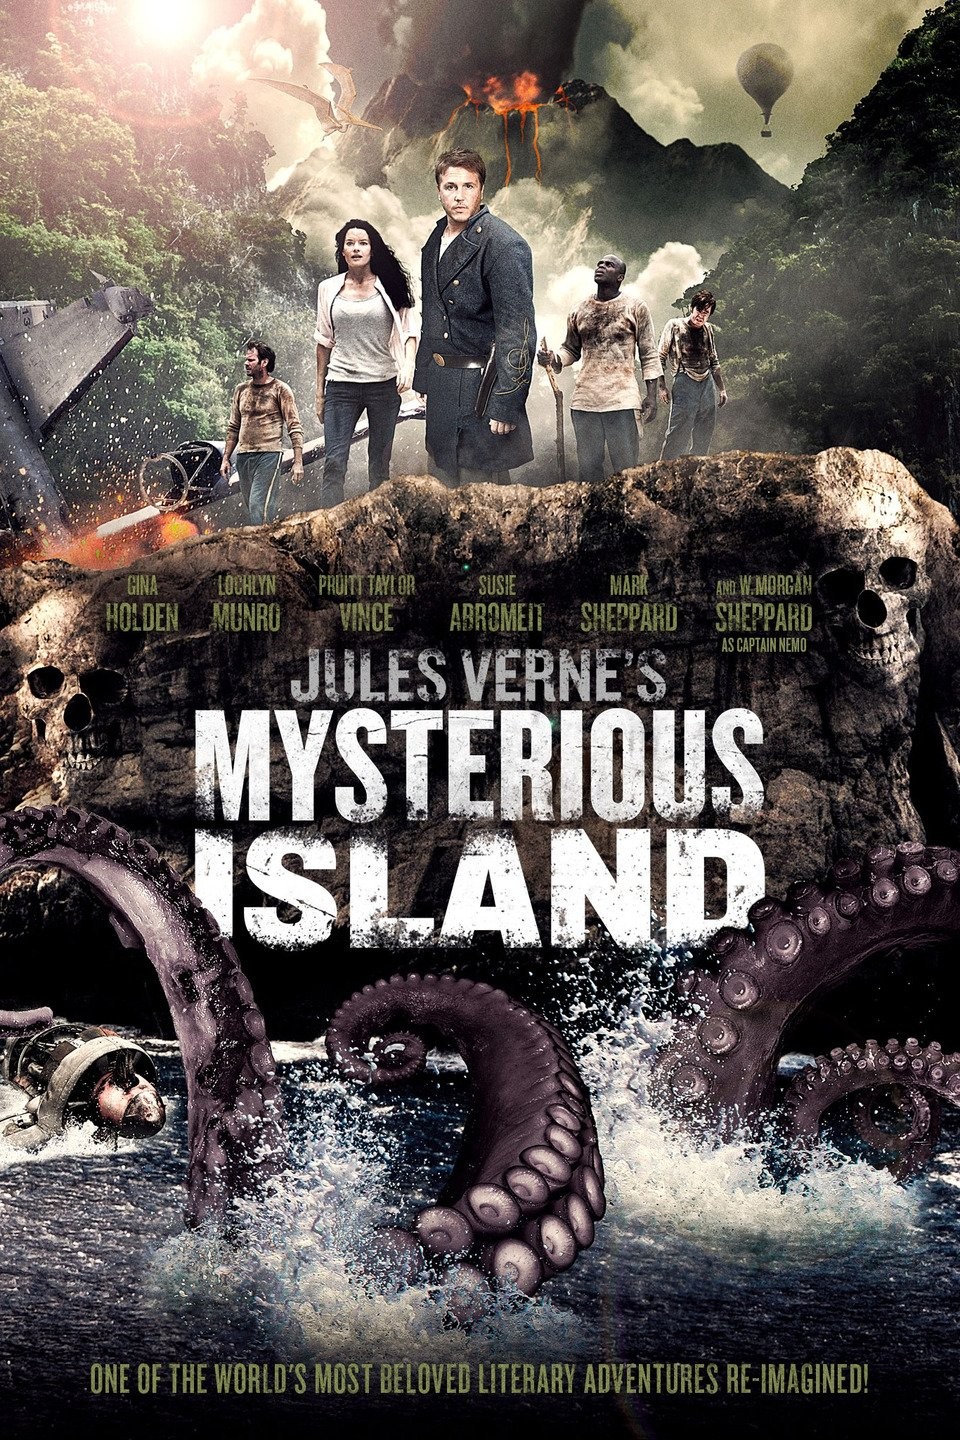 Island Escape - Rotten Tomatoes